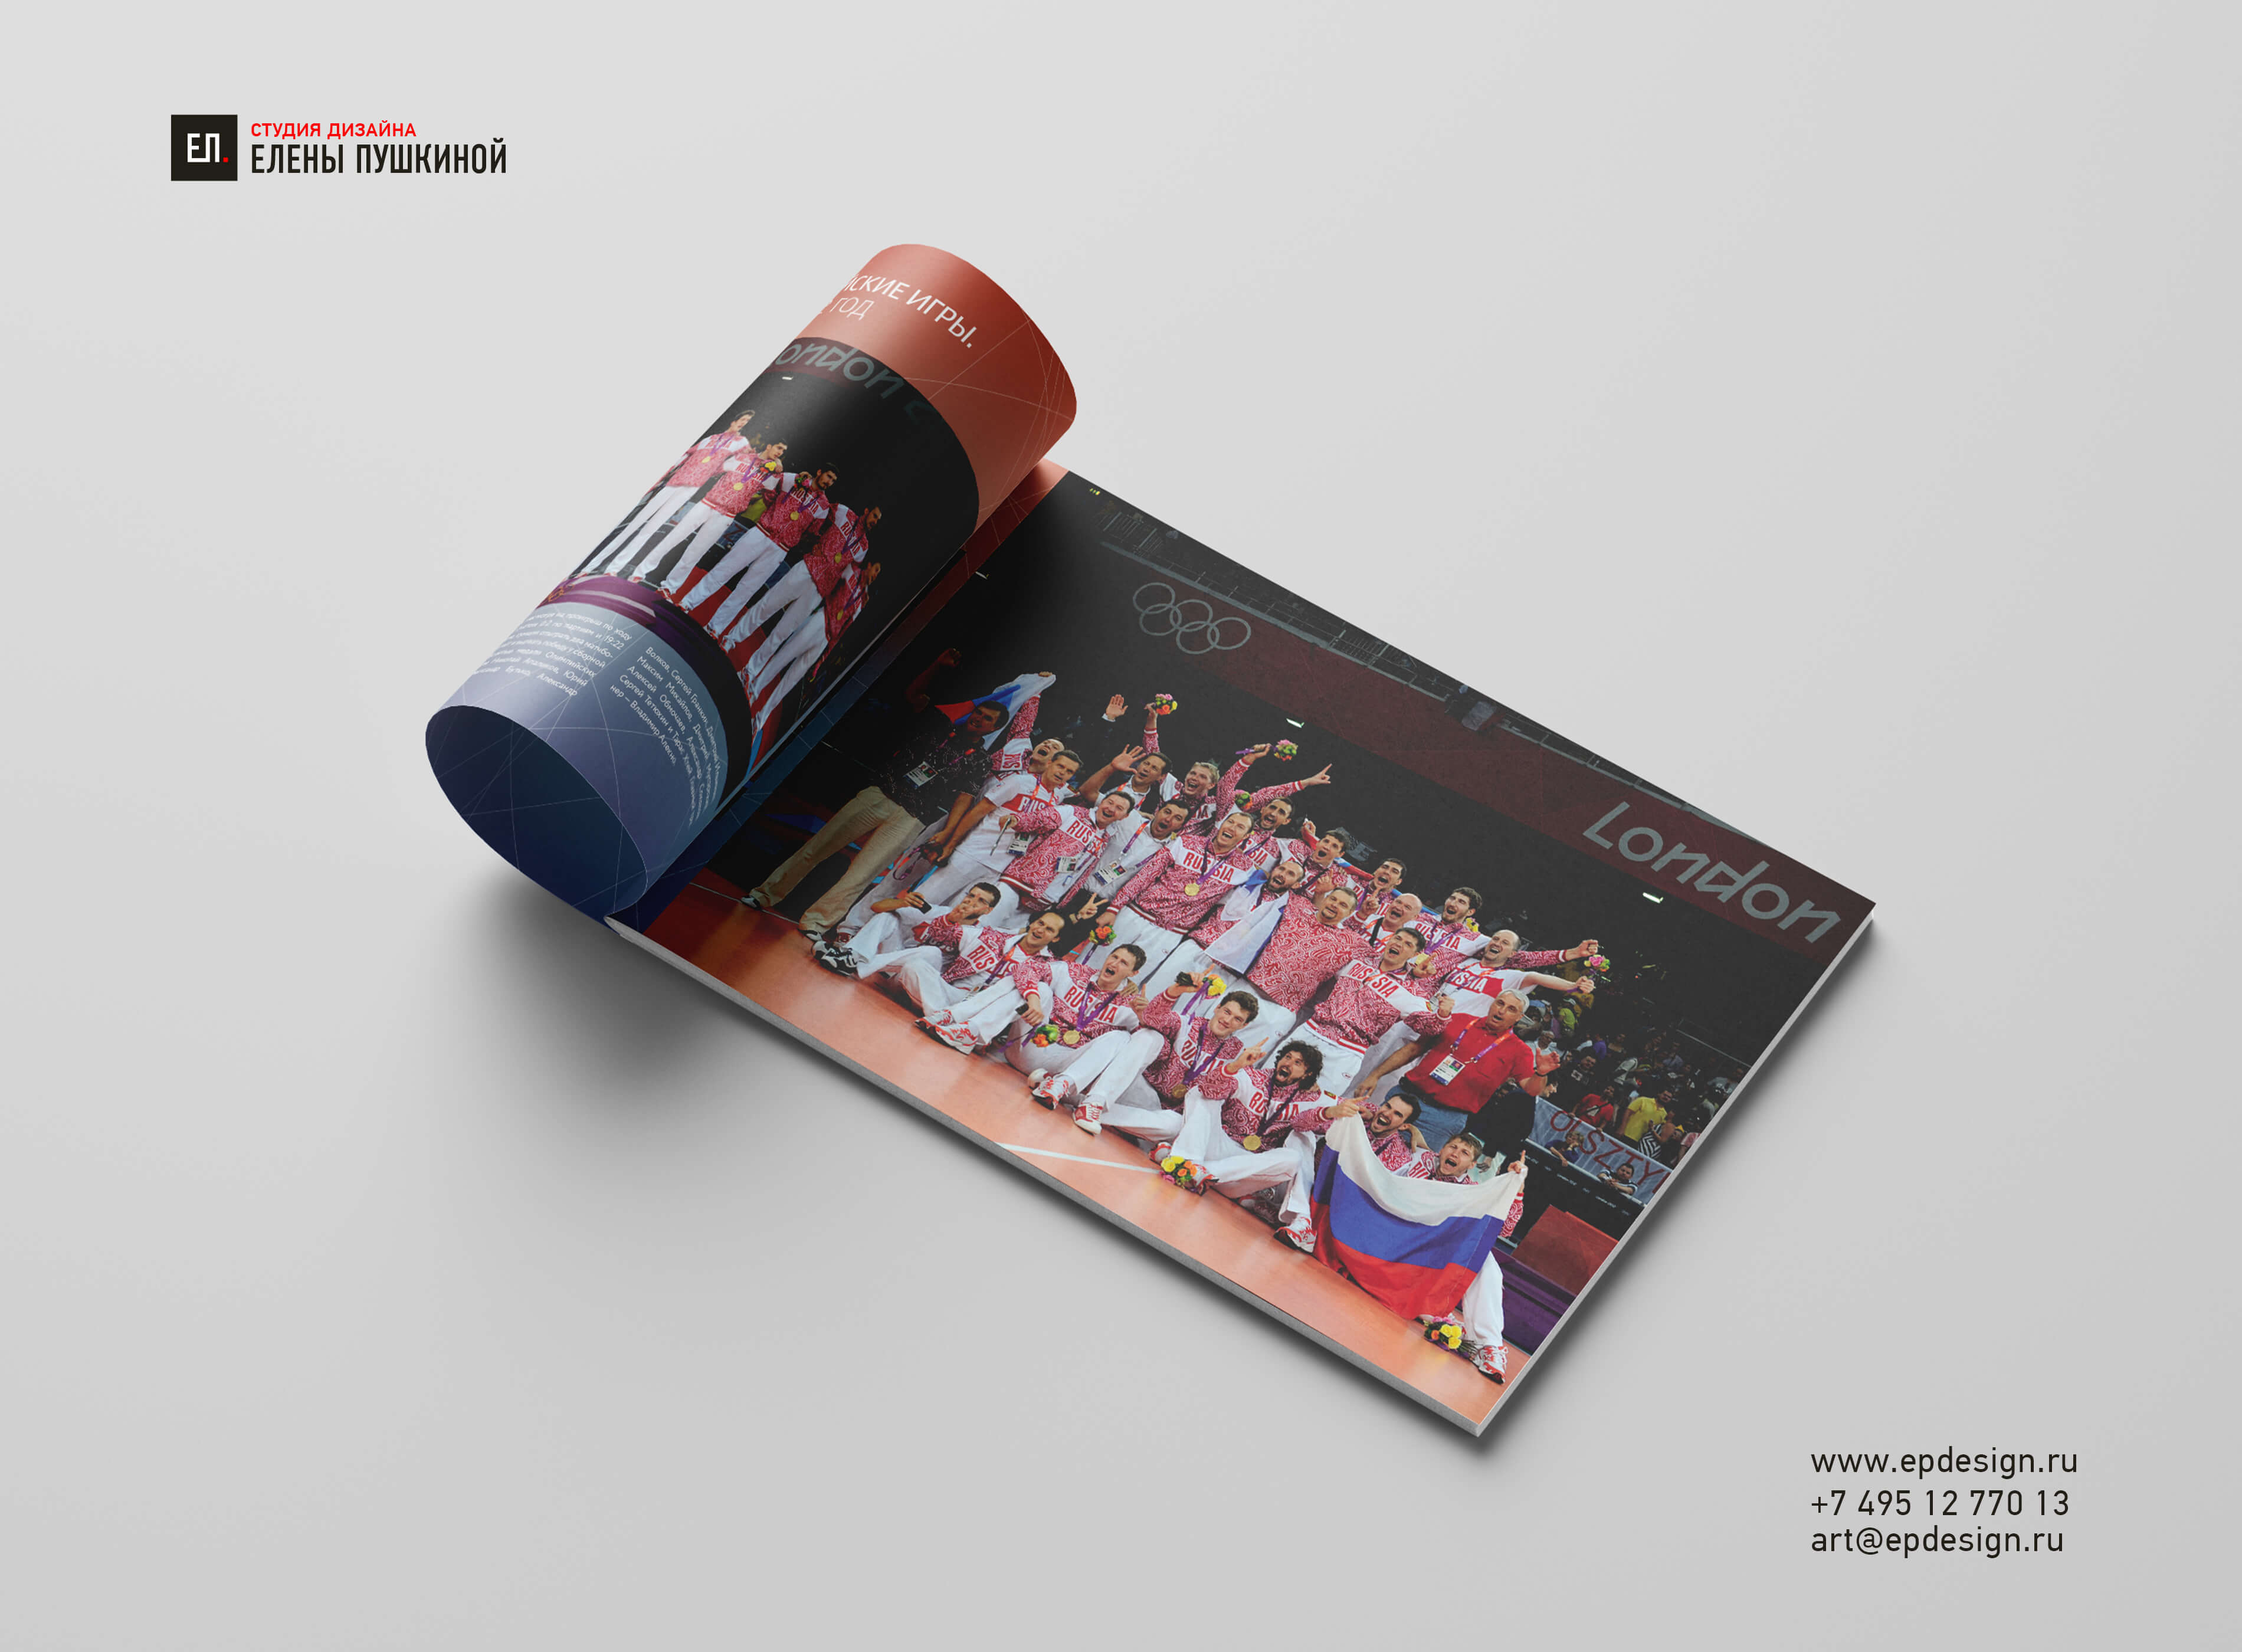 Фотоальбом «Всероссийской Федерации Волейбола» — разработка дизайна с «нуля» и вёрстка брошюры Дизайн каталогов Портфолио